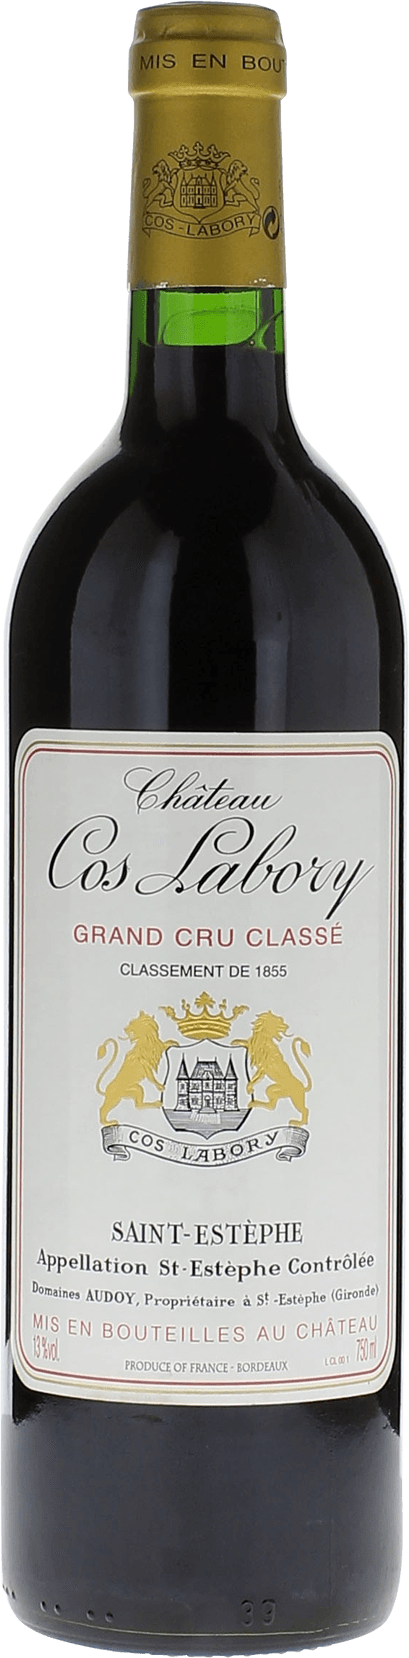 Cos labory 1999 5me Grand cru class Saint-Estphe, Bordeaux rouge